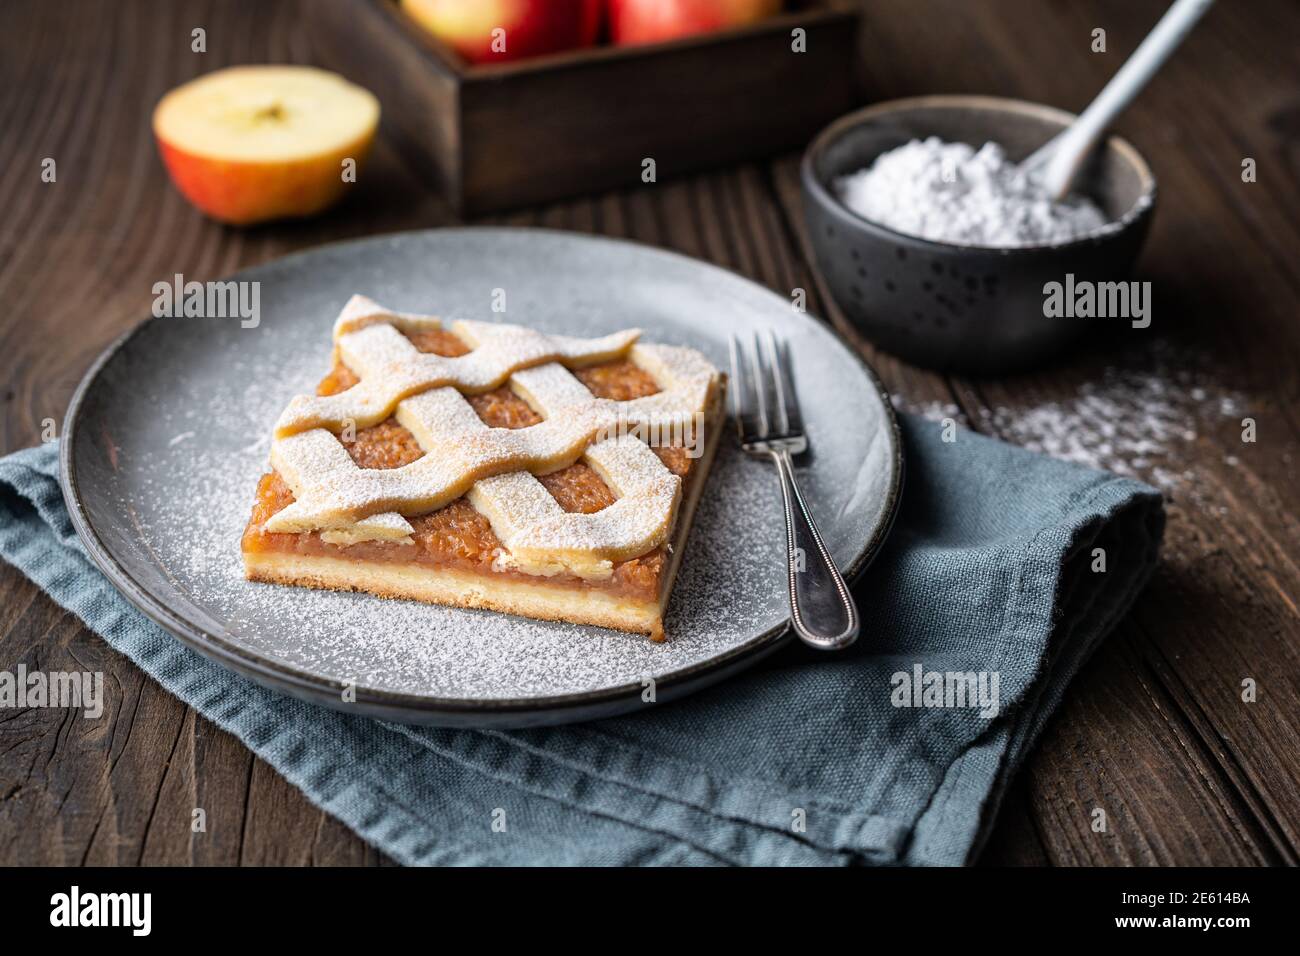 Tranche de tarte aux pommes à la cannelle avec dessus en treillis, arrosée de sucre en poudre sur fond de bois ancien Banque D'Images